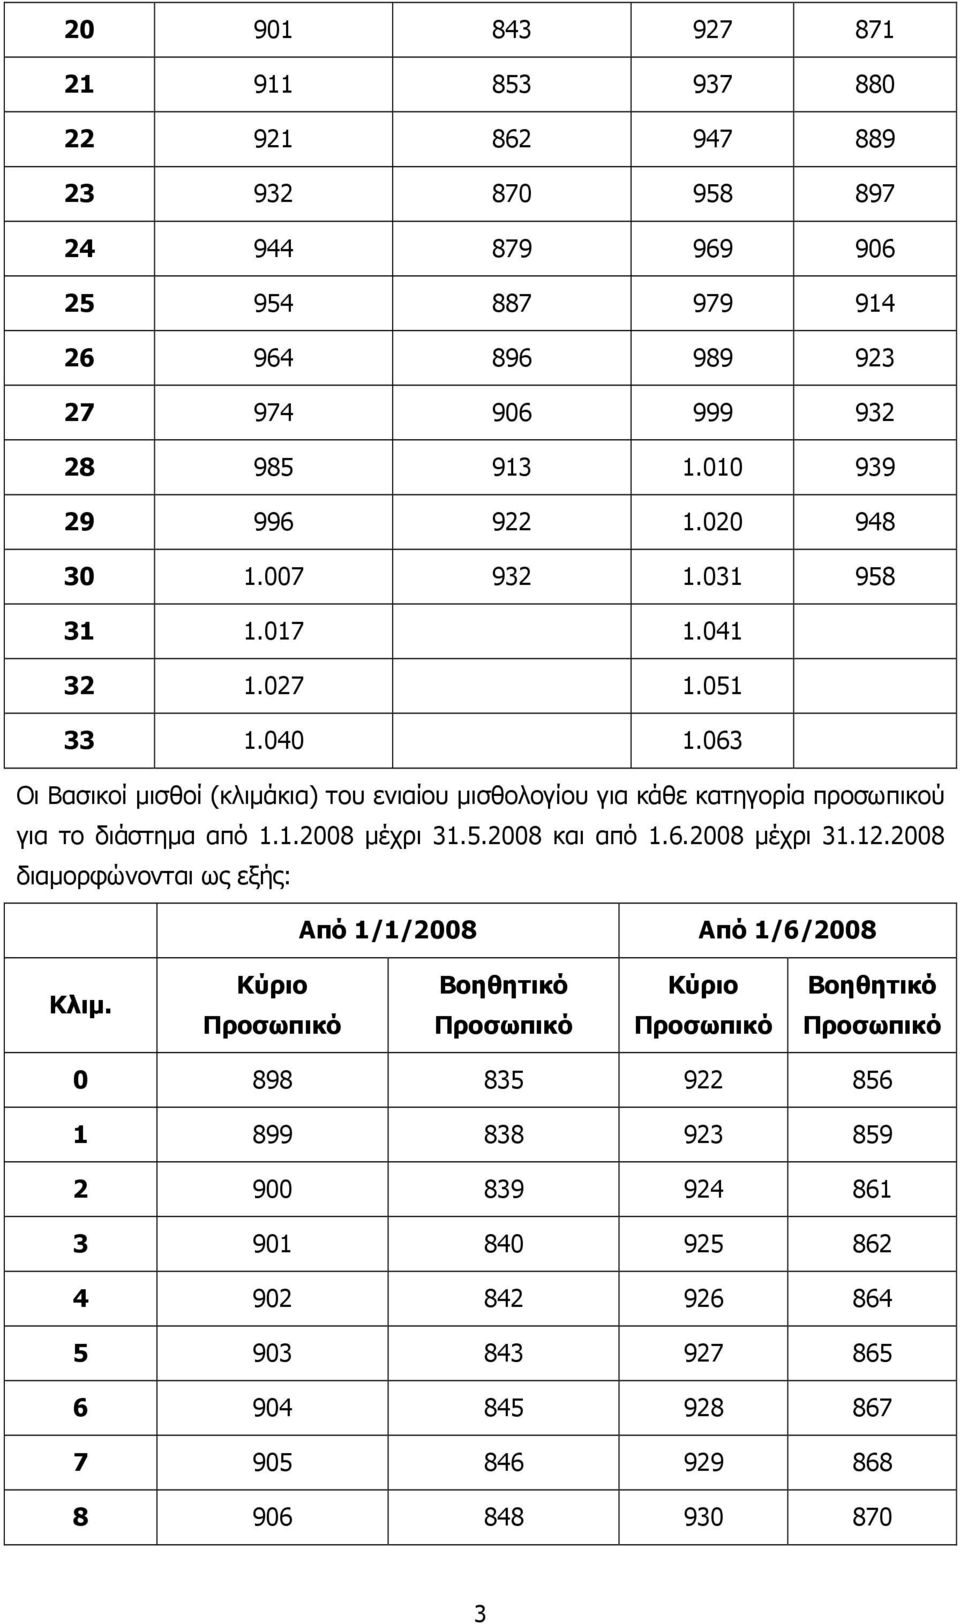 063 Οι Βασικοί µισθοί (κλιµάκια) του ενιαίου µισθολογίου για κάθε κατηγορία προσωπικού για το διάστηµα από 1.1.2008 µέχρι 31.5.2008 και από 1.6.2008 µέχρι 31.12.